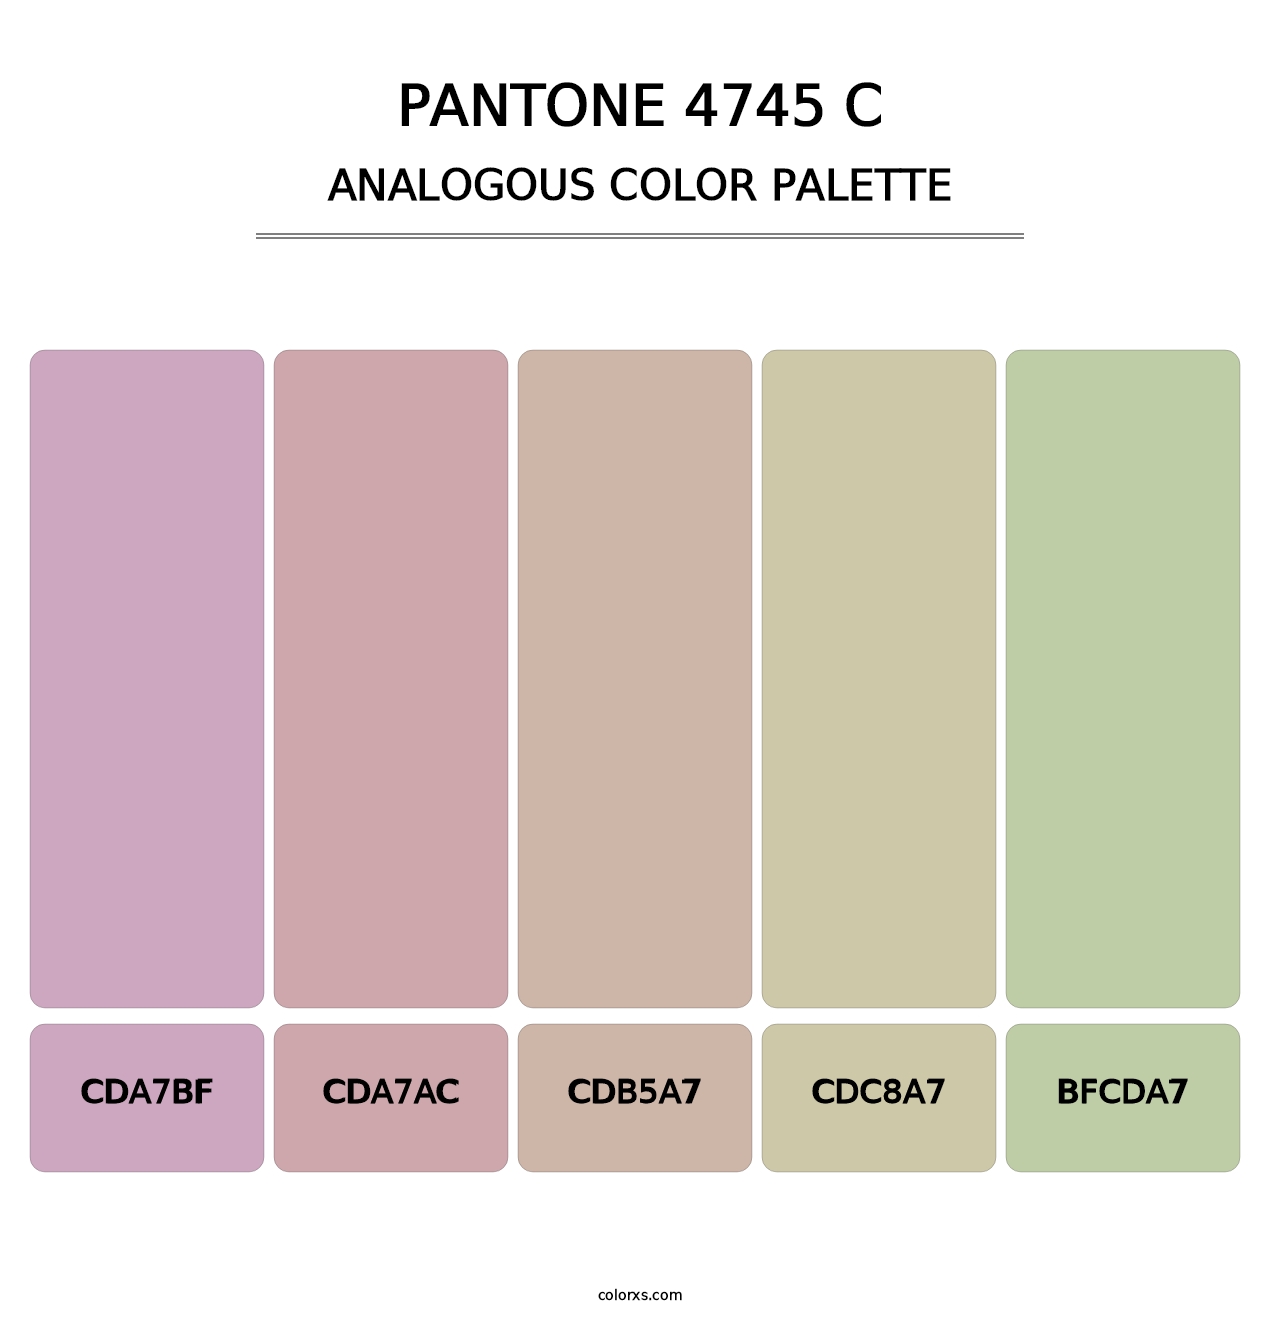 PANTONE 4745 C - Analogous Color Palette